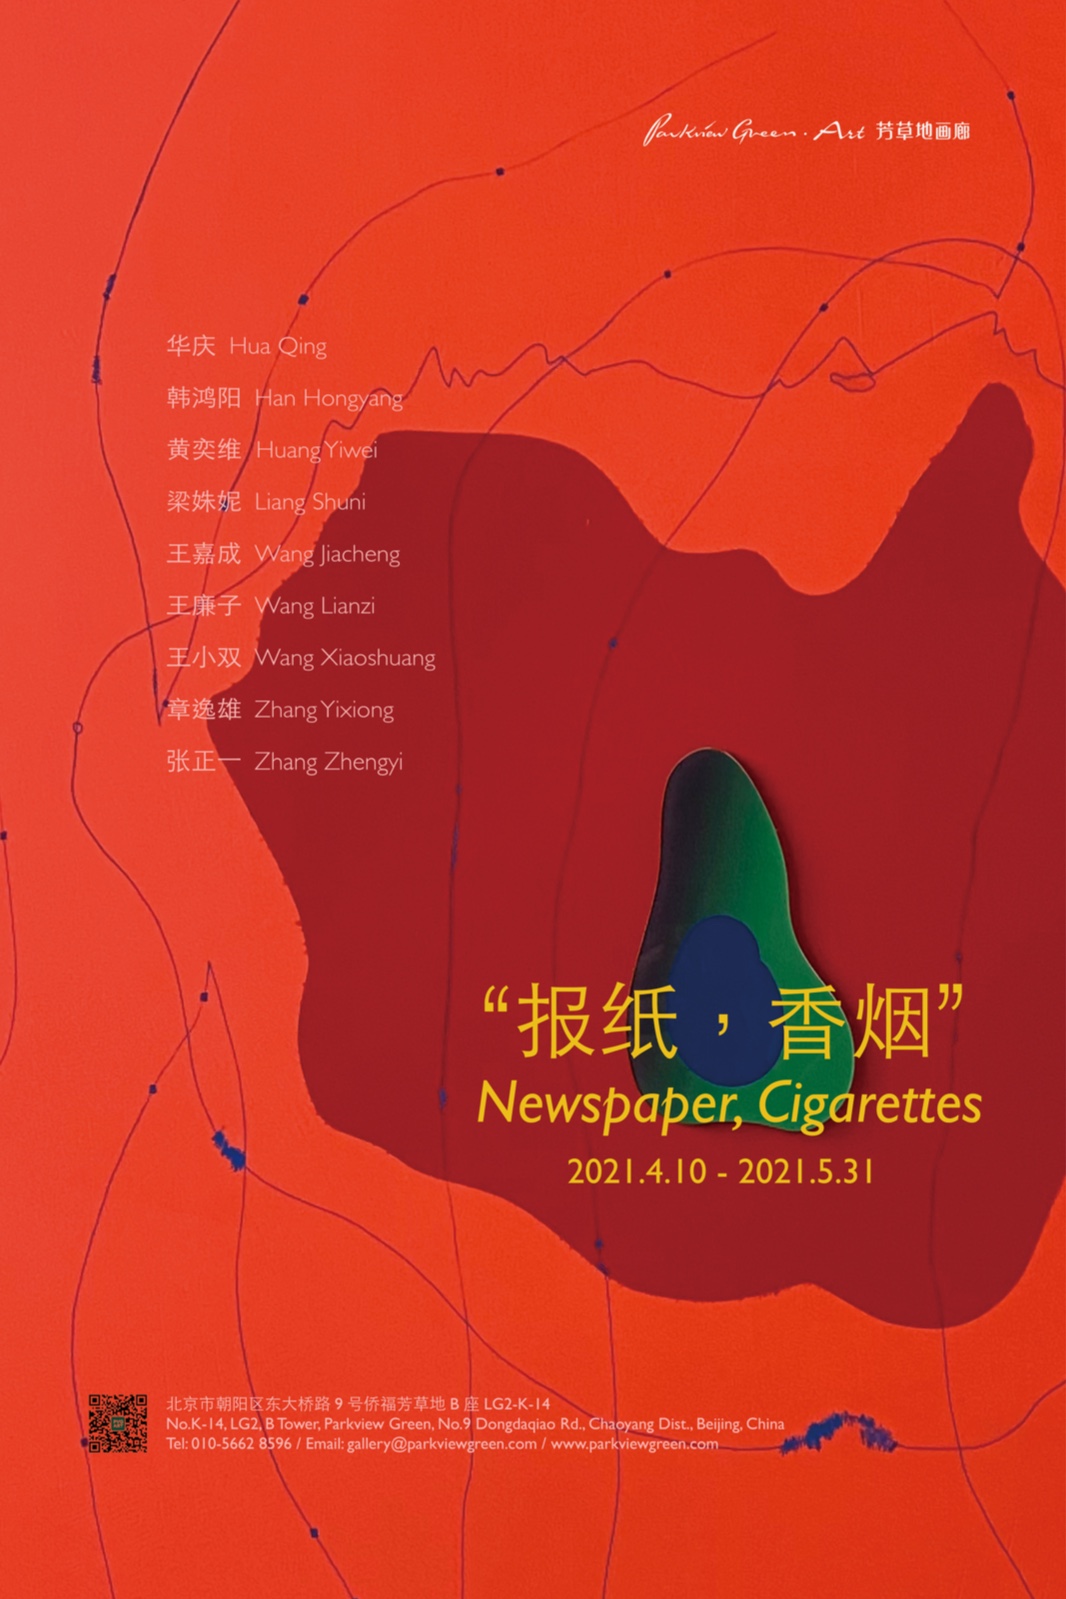 “报纸，香烟” (Newspaper, Cigarettes)